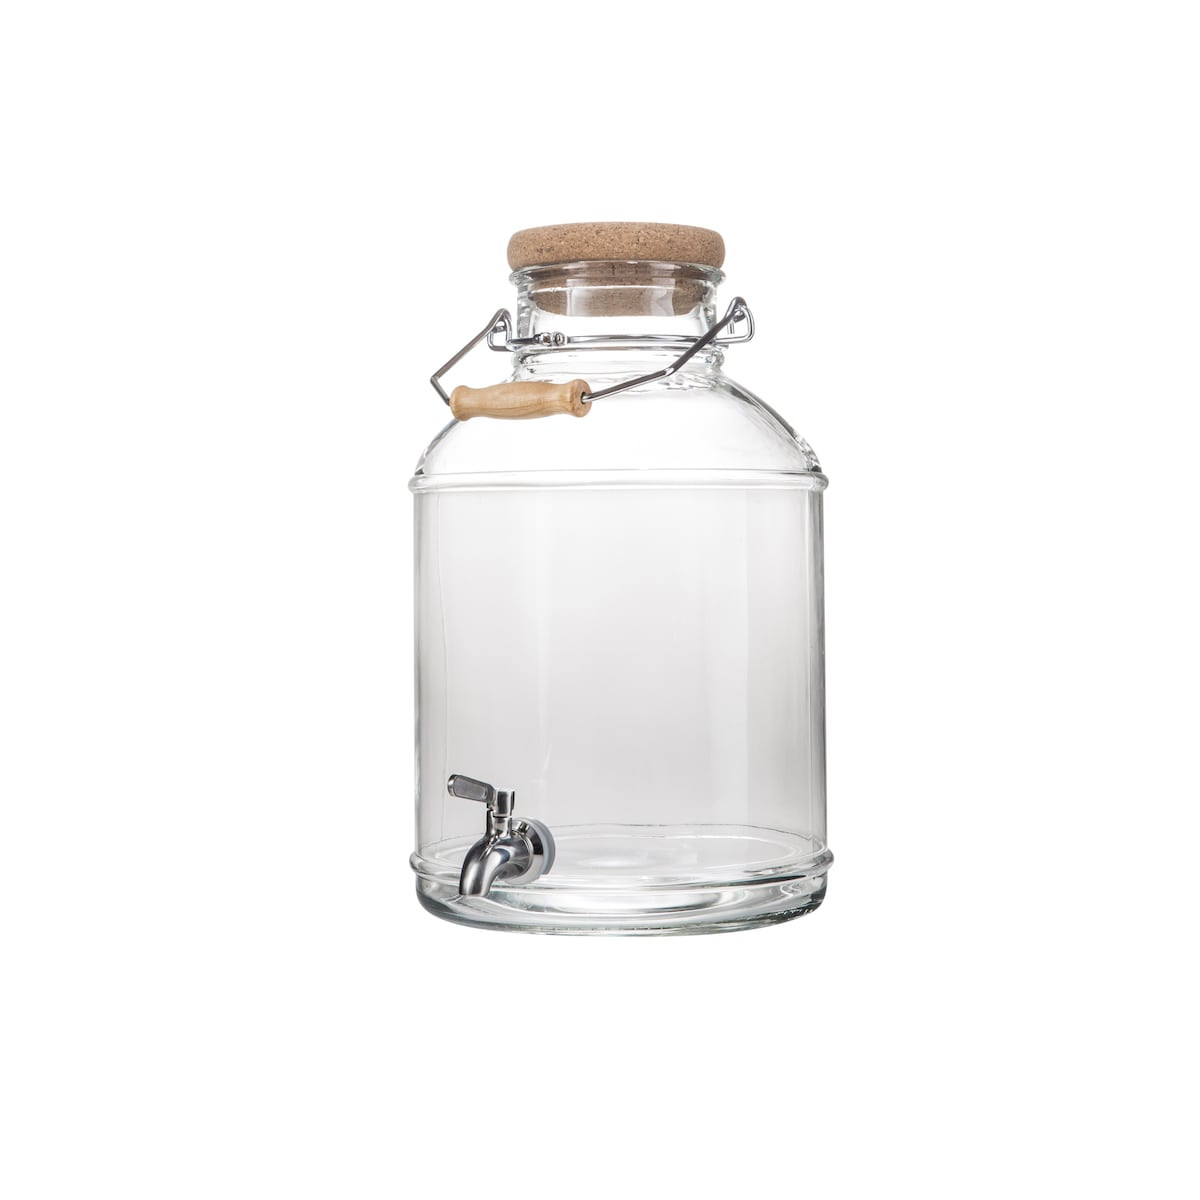 standing glass bottle vase runner set of glass bottle at linen chest in da c 253524 danesco 2